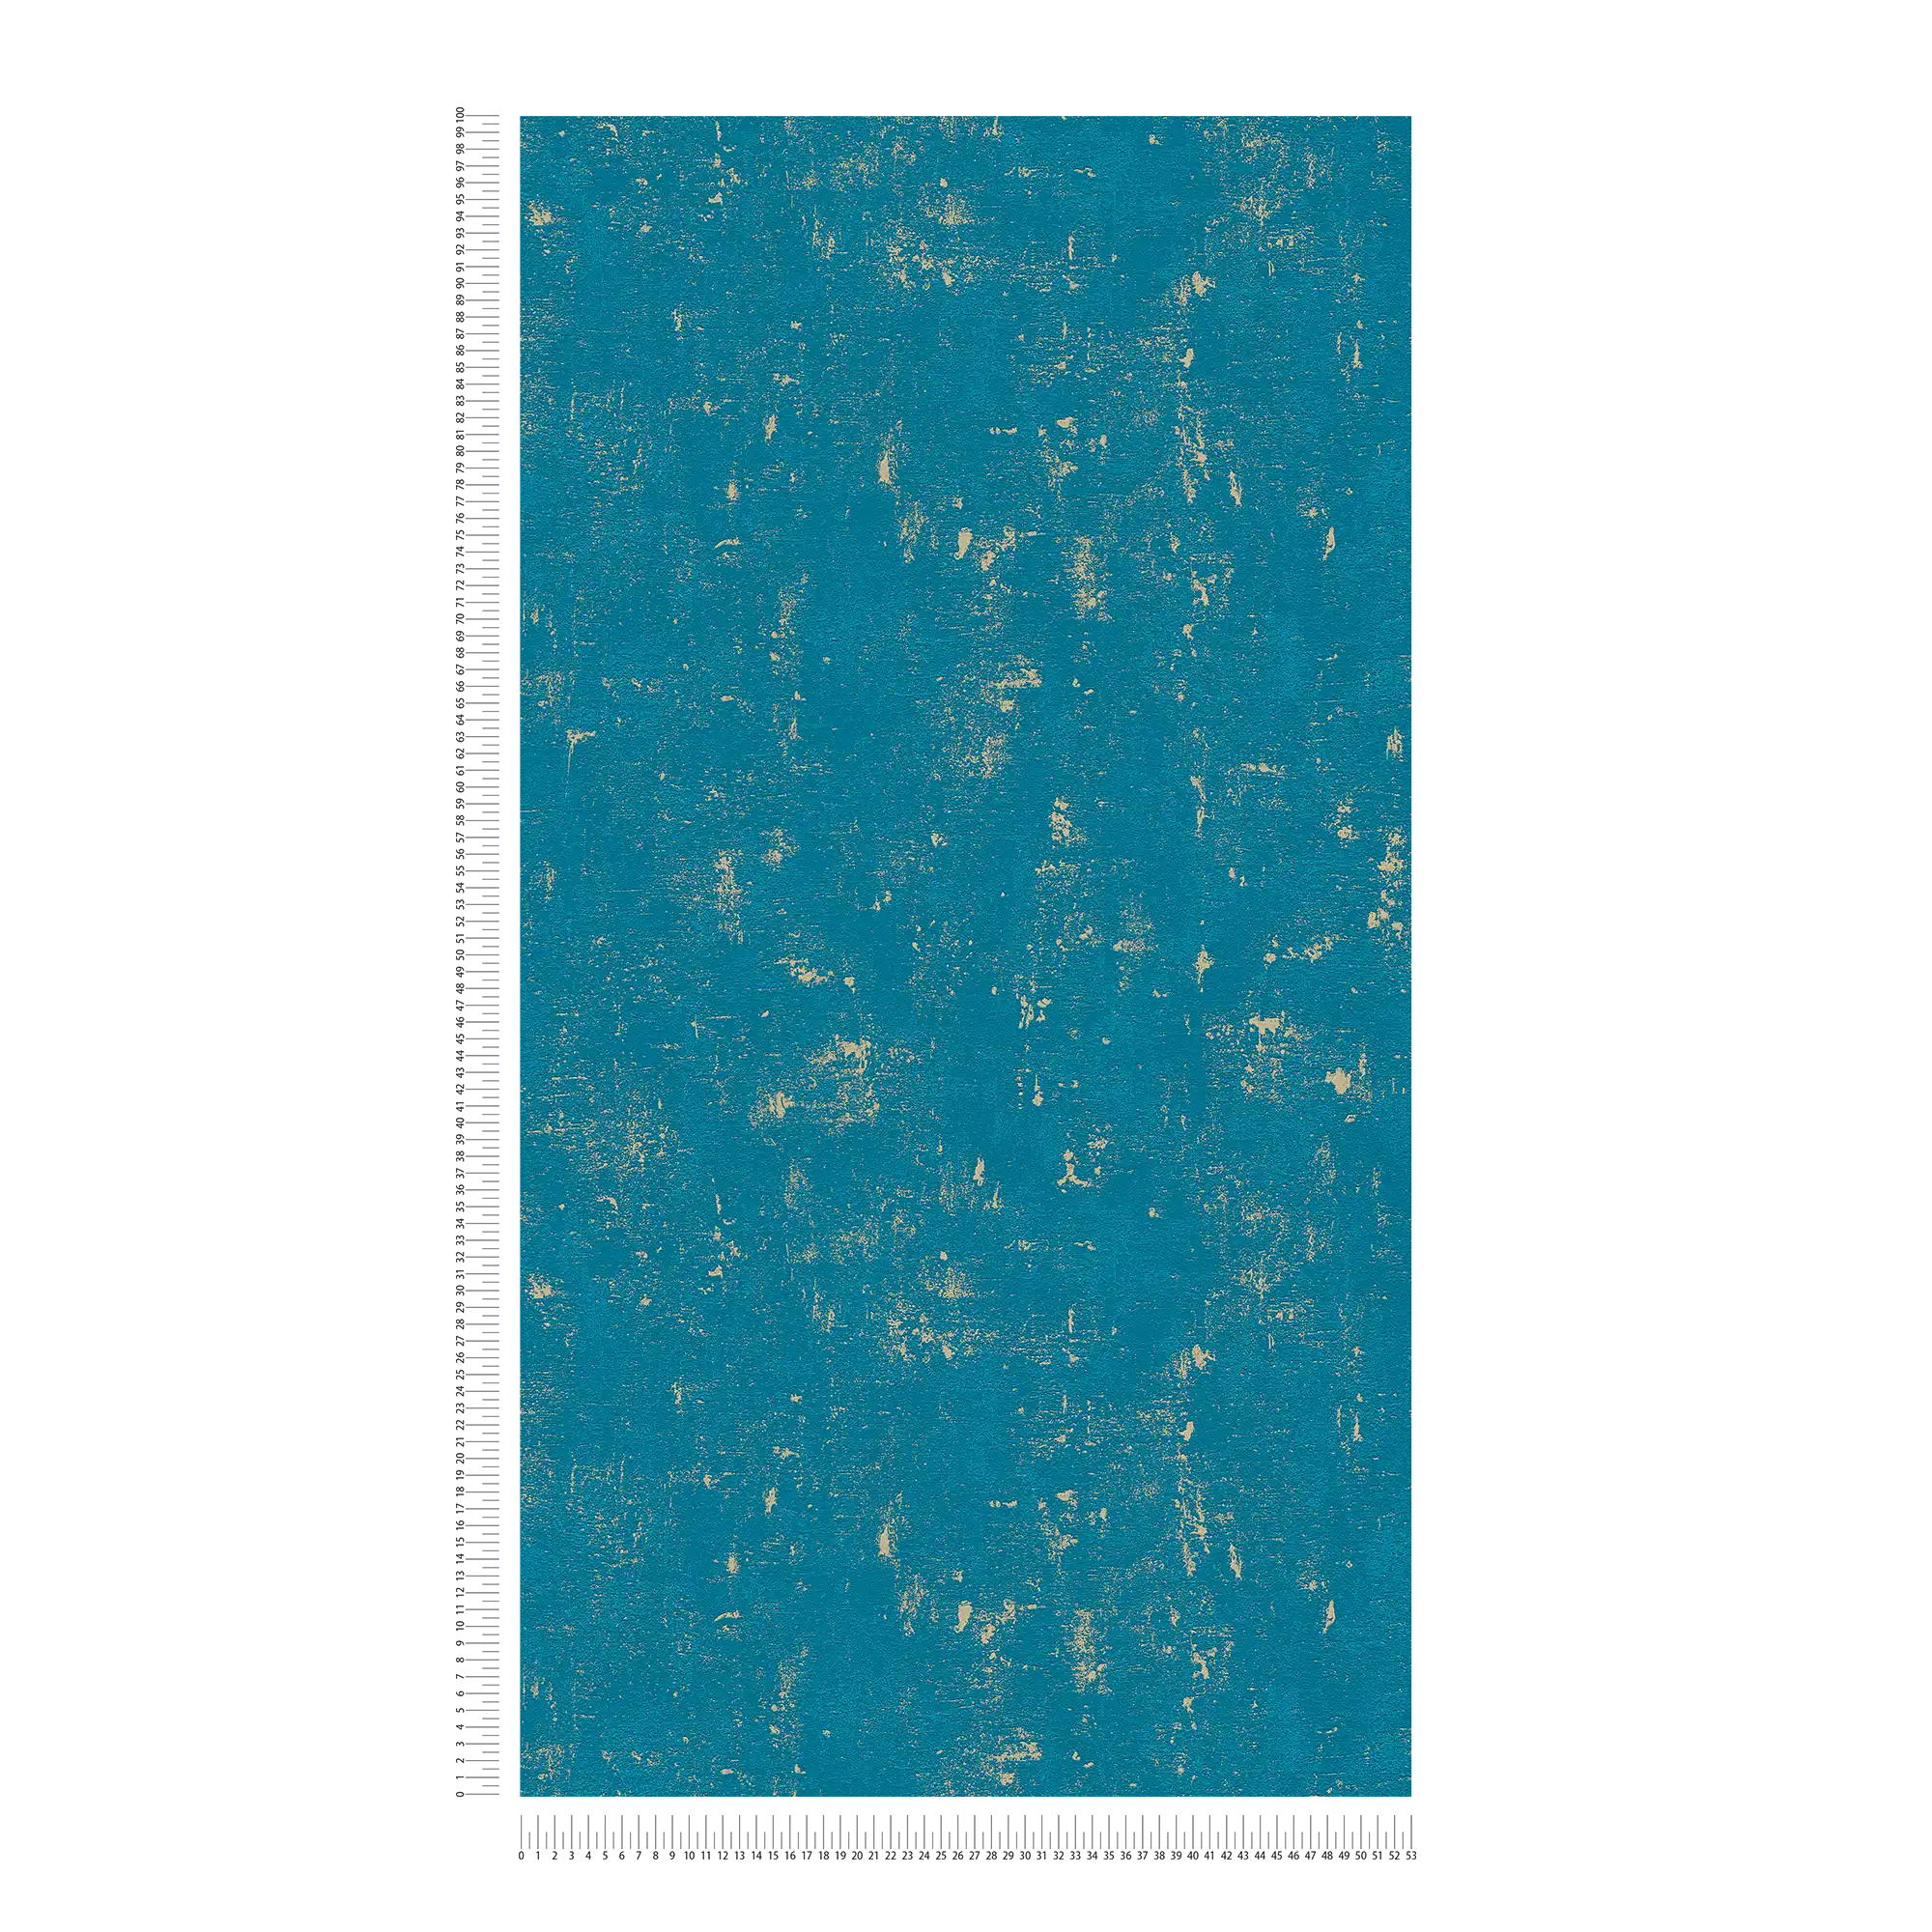             Papier peint aspect usé avec effet métallique - bleu, or
        